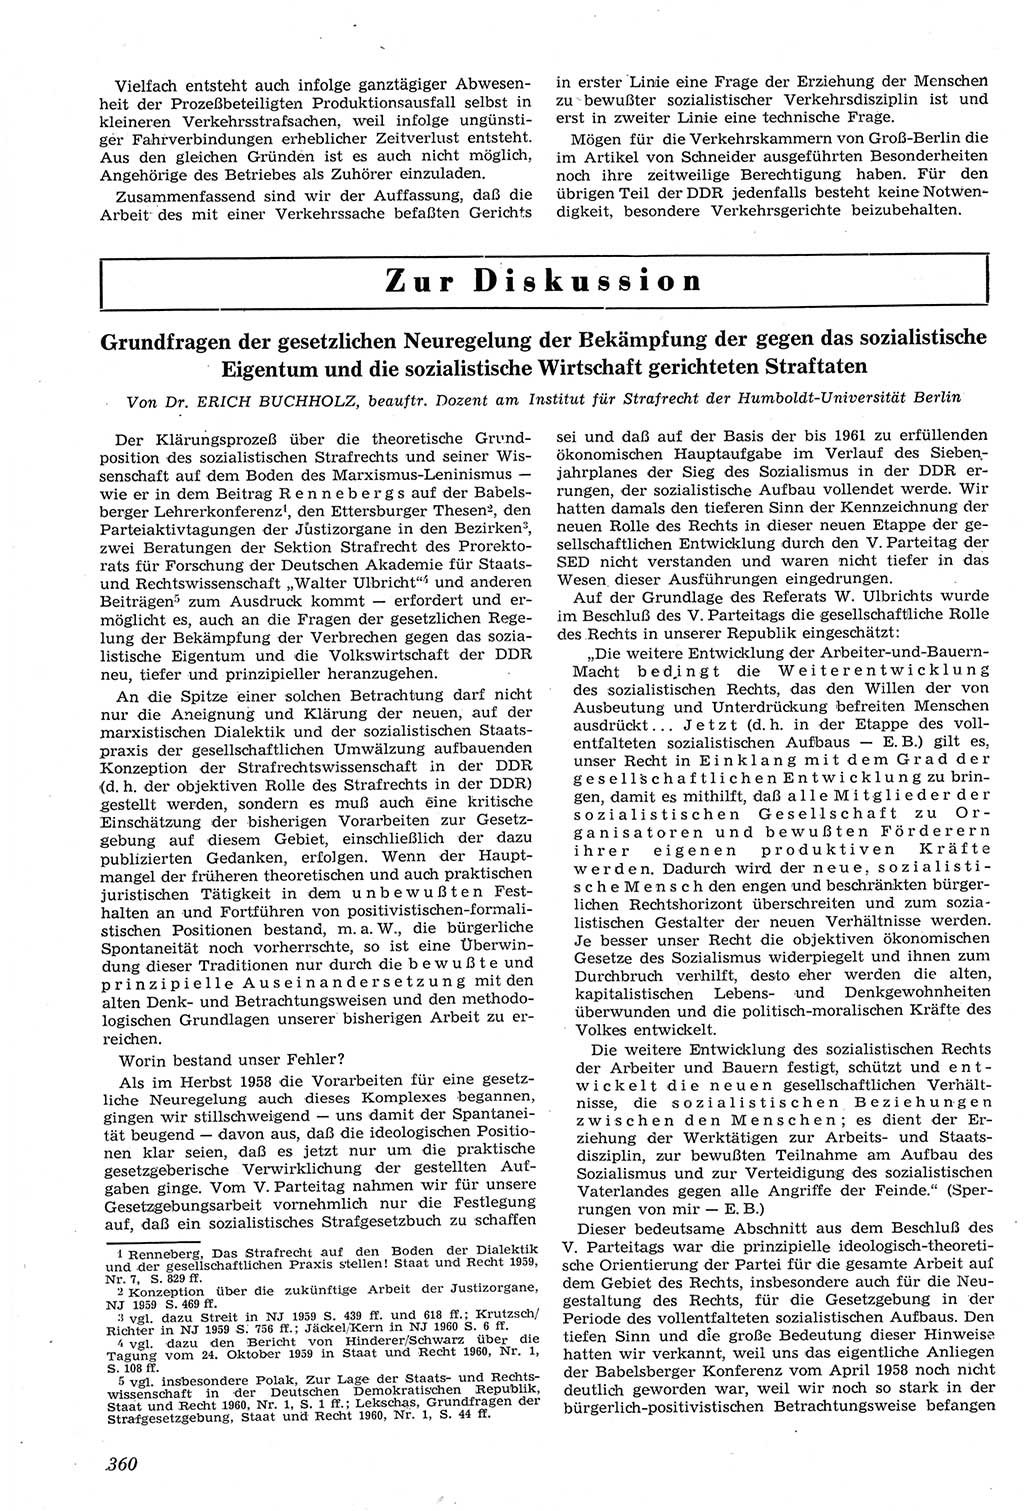 Neue Justiz (NJ), Zeitschrift für Recht und Rechtswissenschaft [Deutsche Demokratische Republik (DDR)], 14. Jahrgang 1960, Seite 360 (NJ DDR 1960, S. 360)